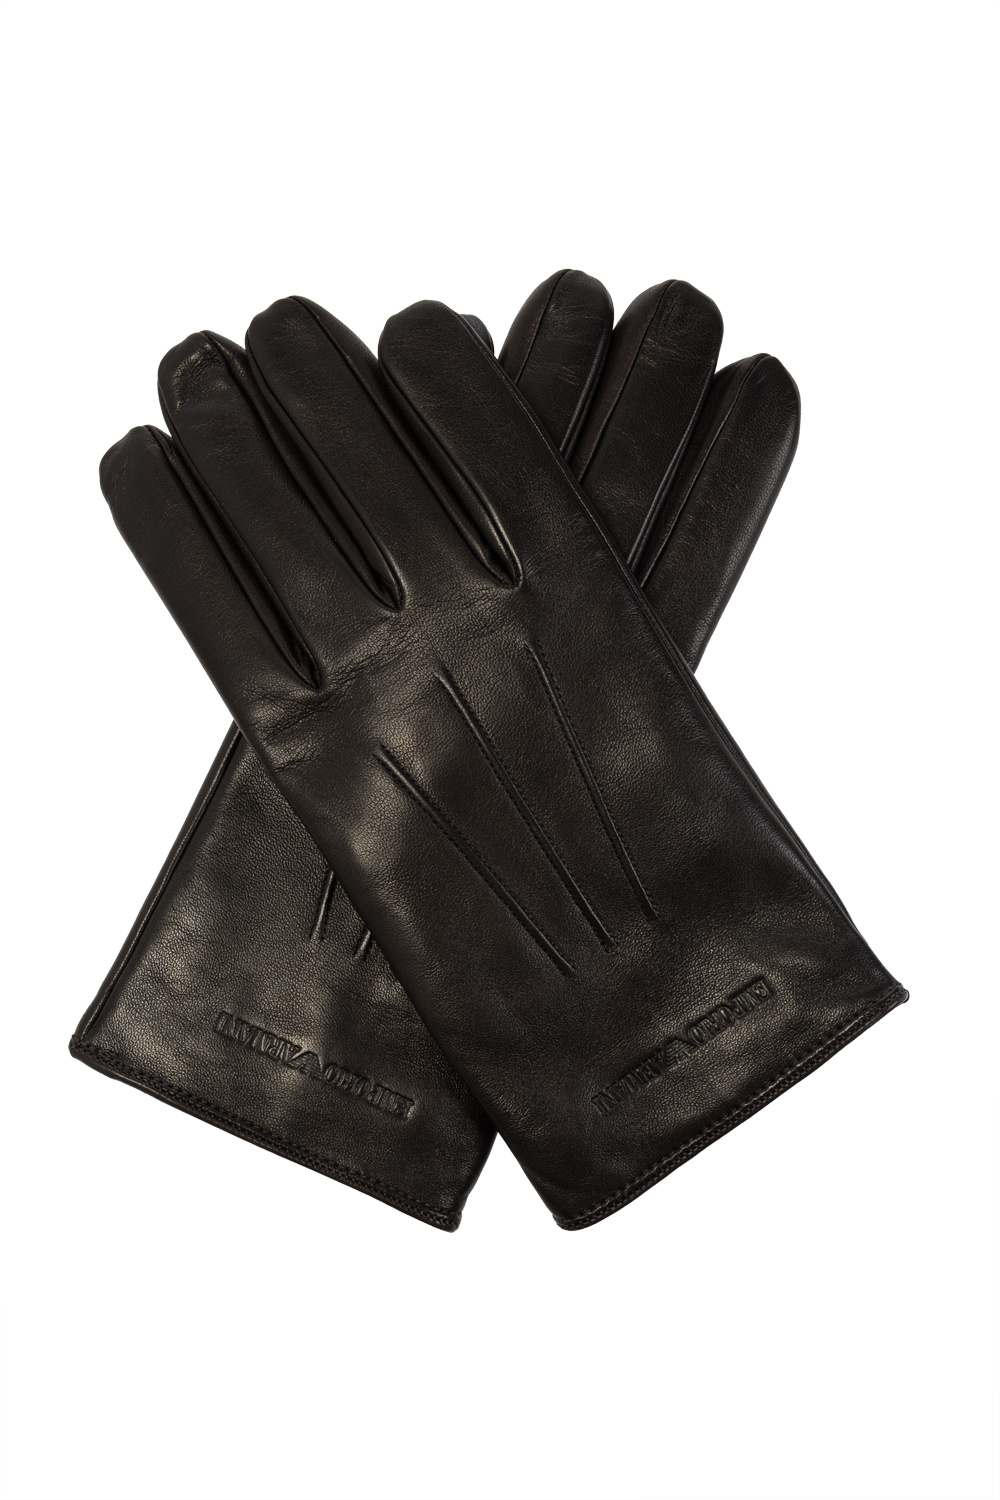 Emporio blk armani Leather gloves